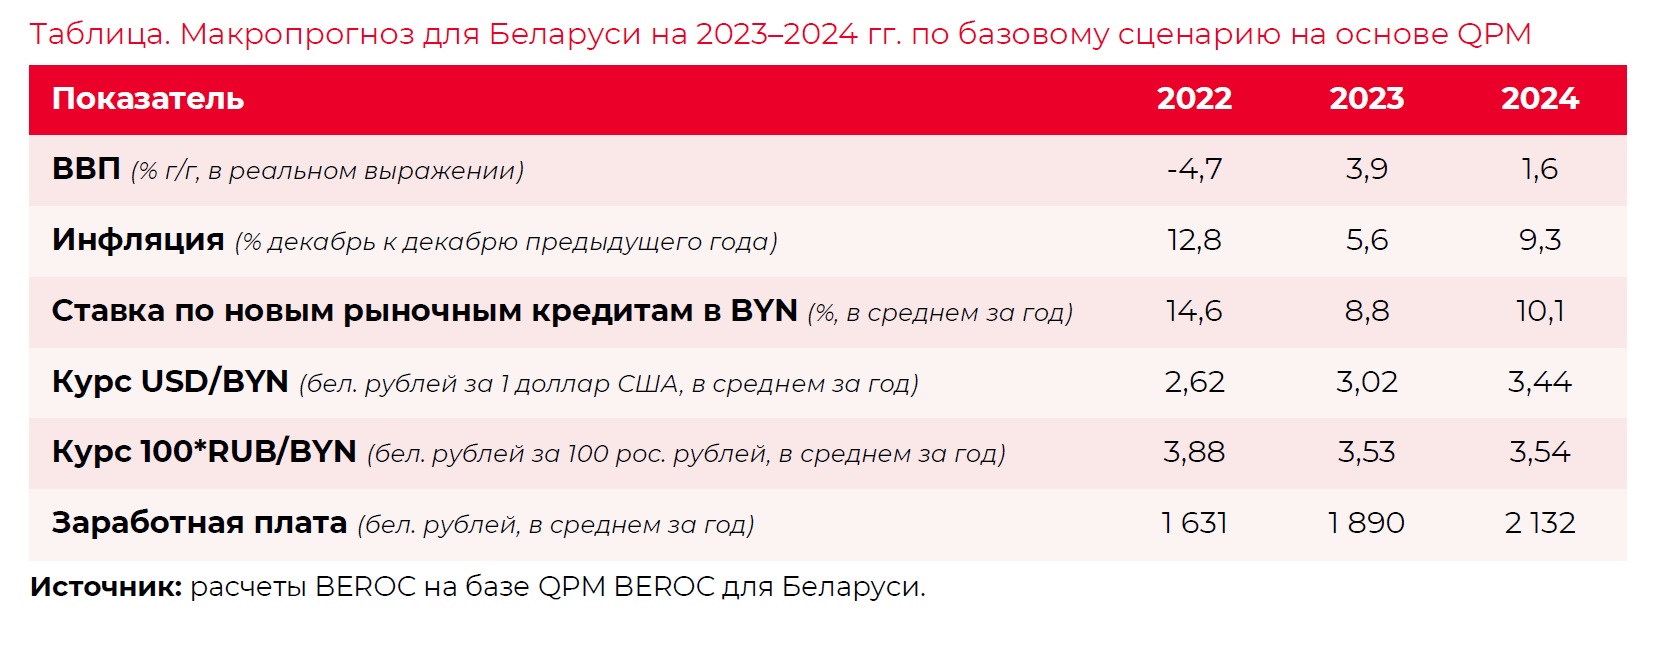 Рост беларусской экономики замедлится до 1,6% в 2024 году - прогноз BEROC